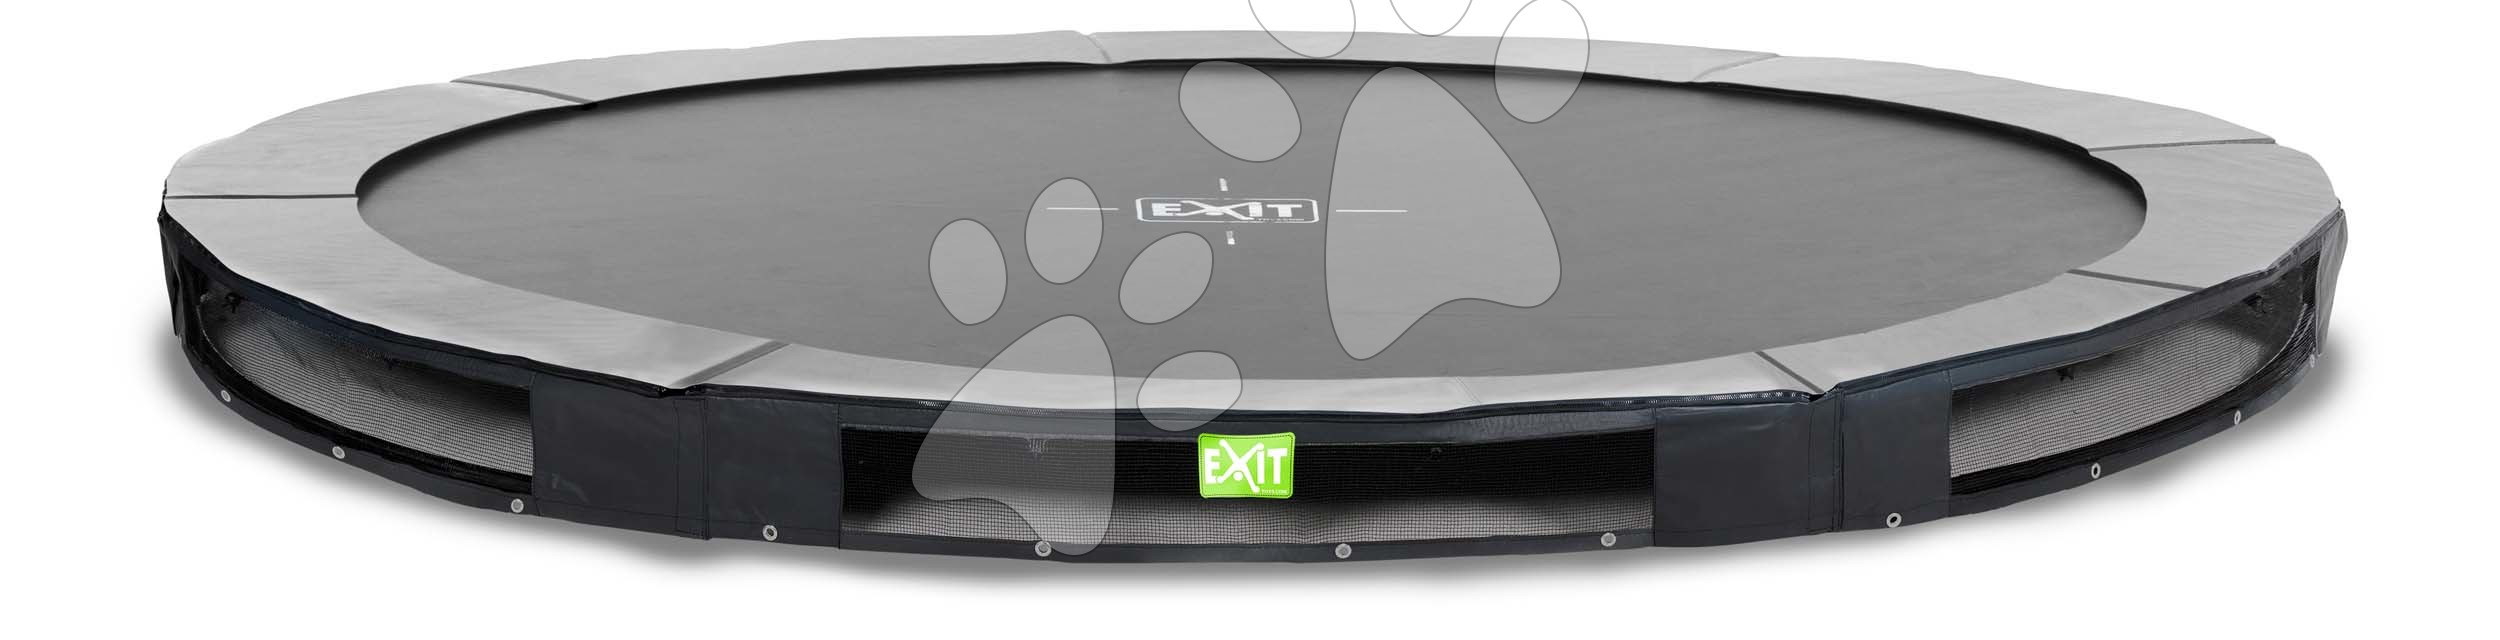 E-shop Trampolína Elegant Premium Ground Sports Black Exit Toys prízemná okrúhla 366 cm priemer čierna